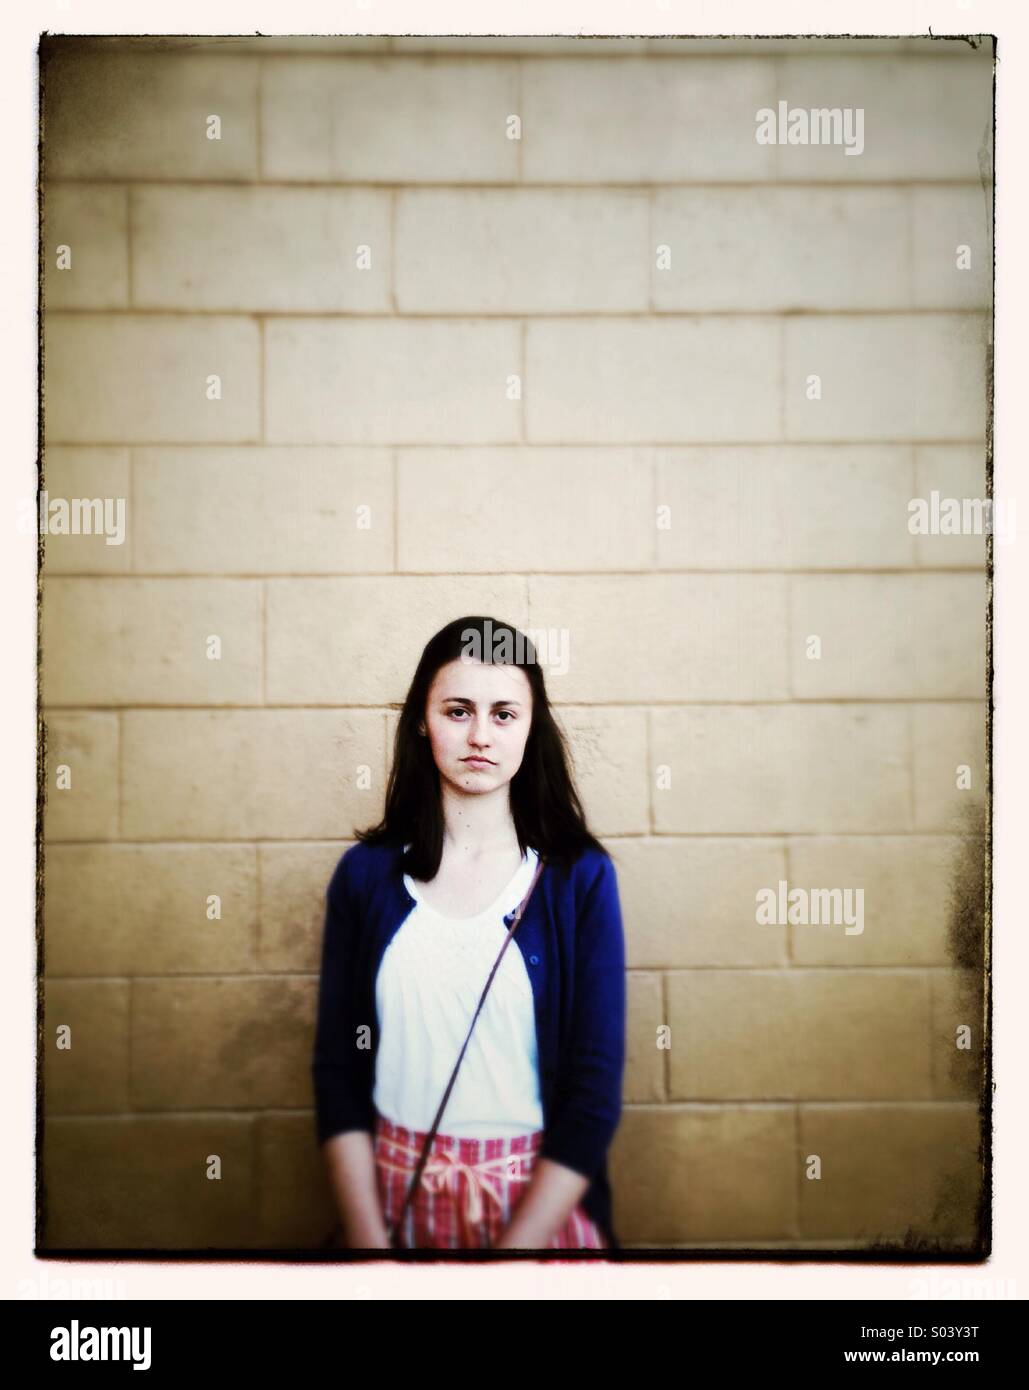 Ragazza adolescente shopping nella parte anteriore del blocco di muro Foto Stock